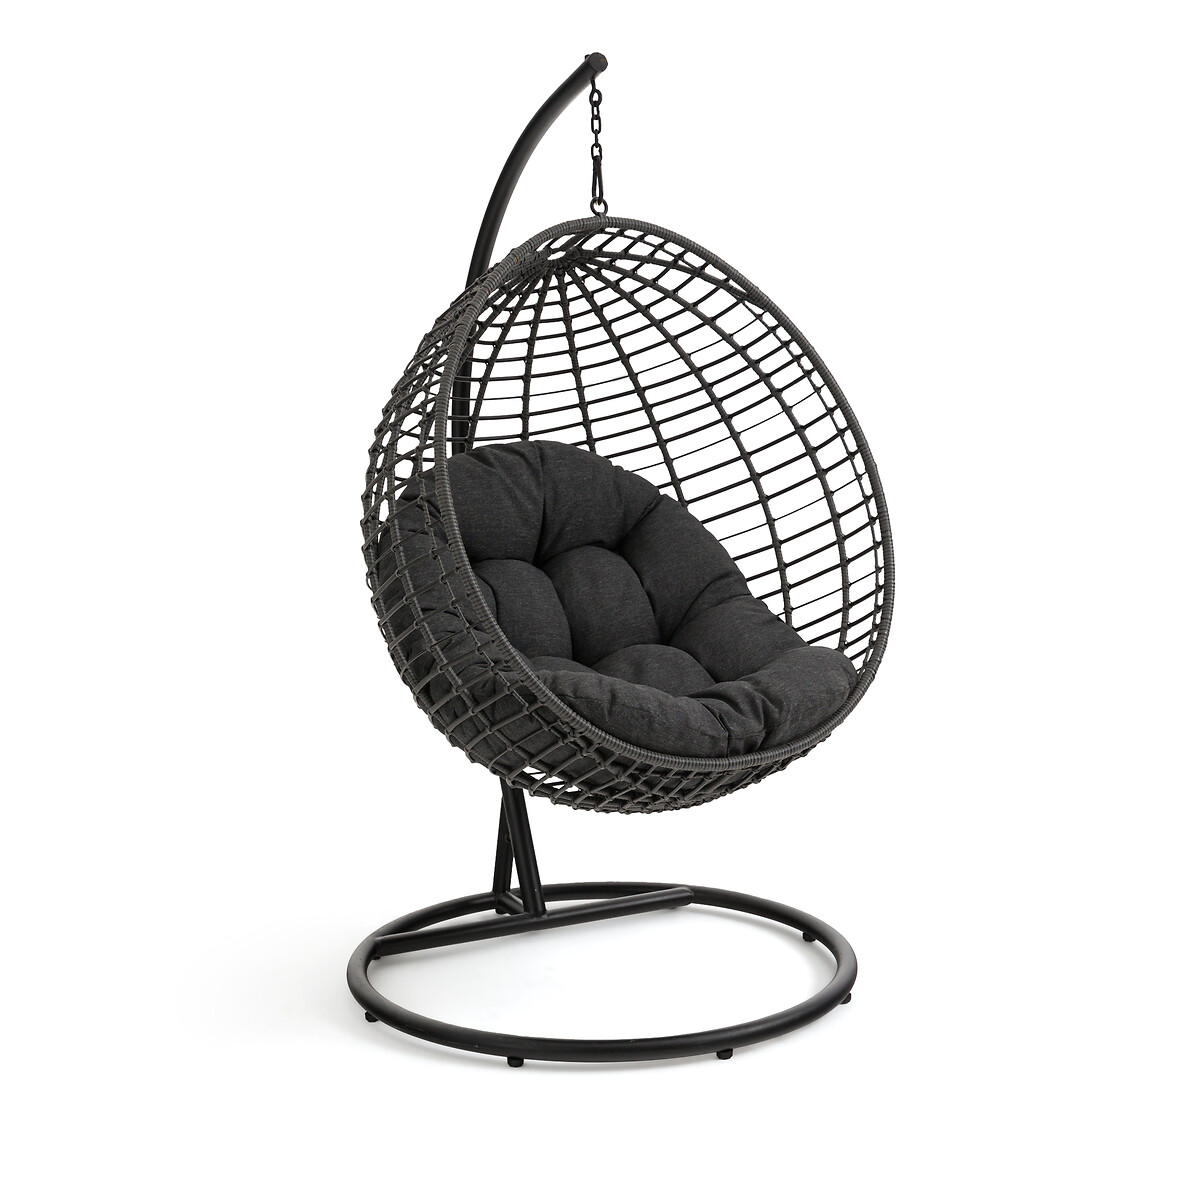 Кресло садовое подвесное Missa единый размер черный кресло садовое из плетеного пластика selya единый размер фиолетовый